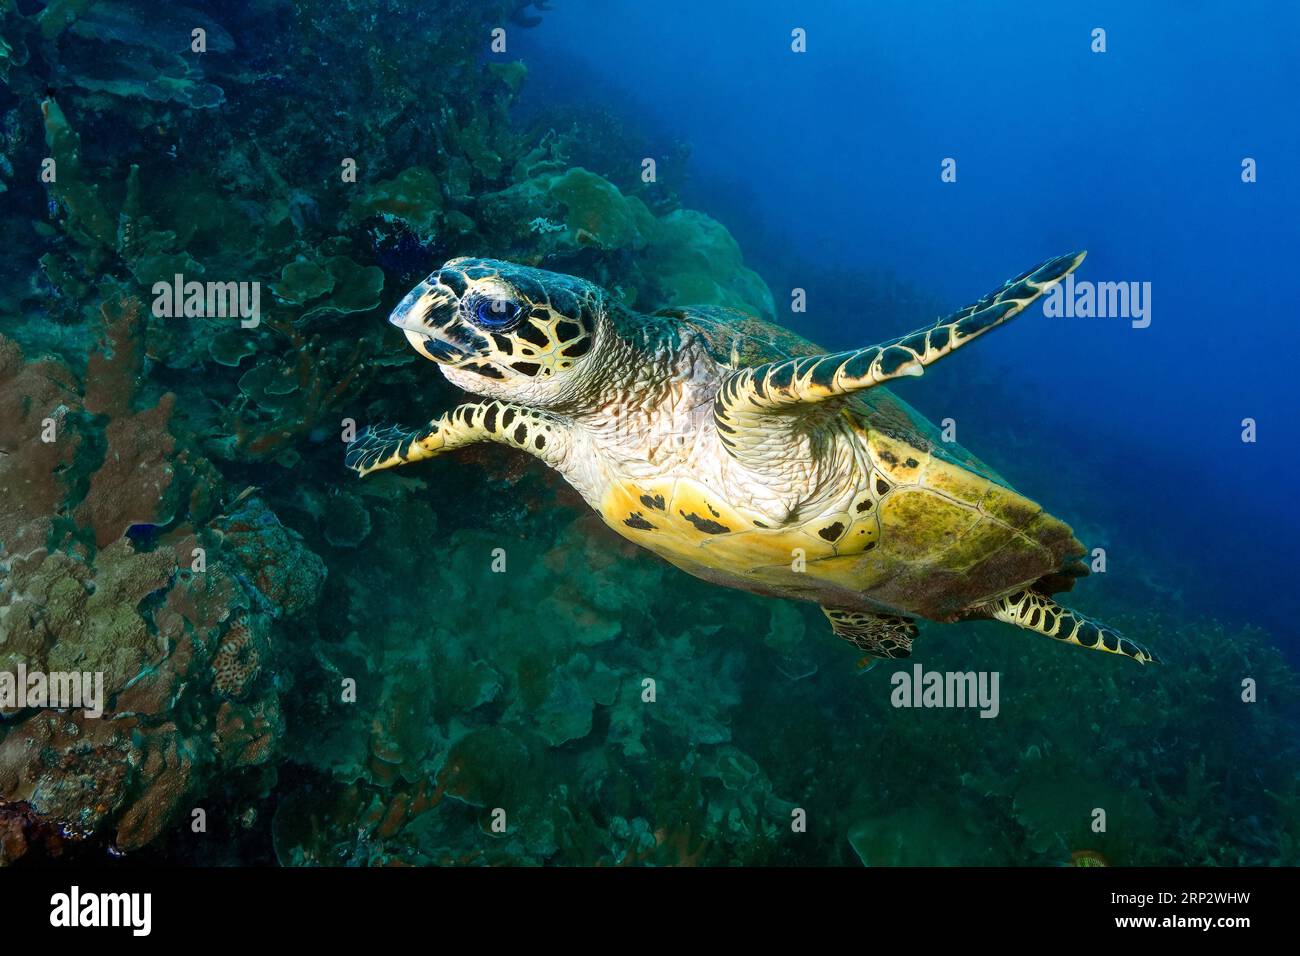 Tartaruga falco (Eretmochelys imbrikata) che nuota di fronte alla barriera corallina con coralli sassosi (Scleractinia), Oceano Pacifico, Isole Caroline Foto Stock